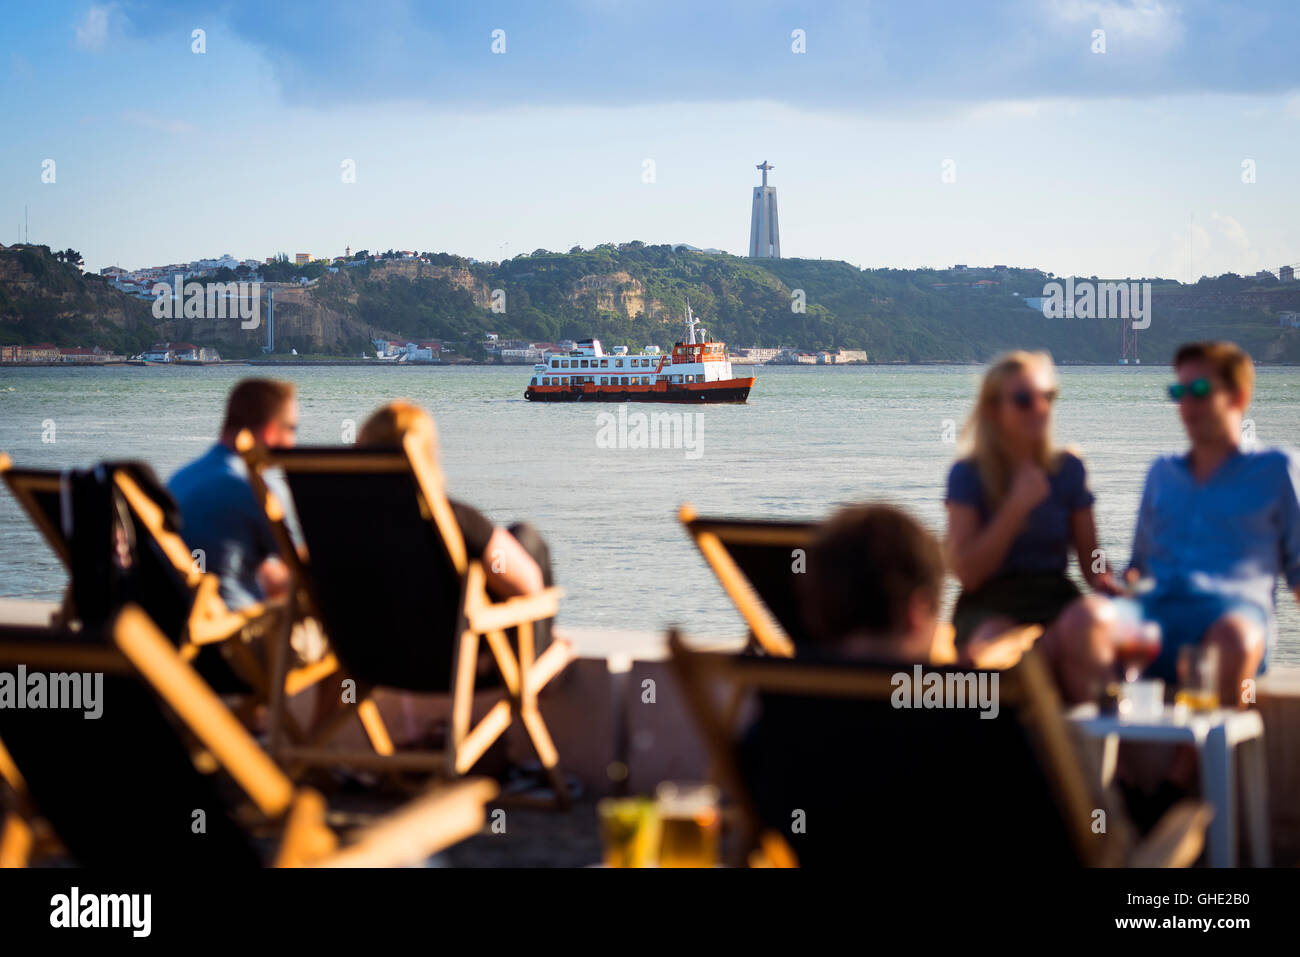 Les gens dans une esplanade à Lisbonne, Portugal, par le Tage, avec un bateau à passagers (cacilheiro) traversant le Tage ; Conc Banque D'Images